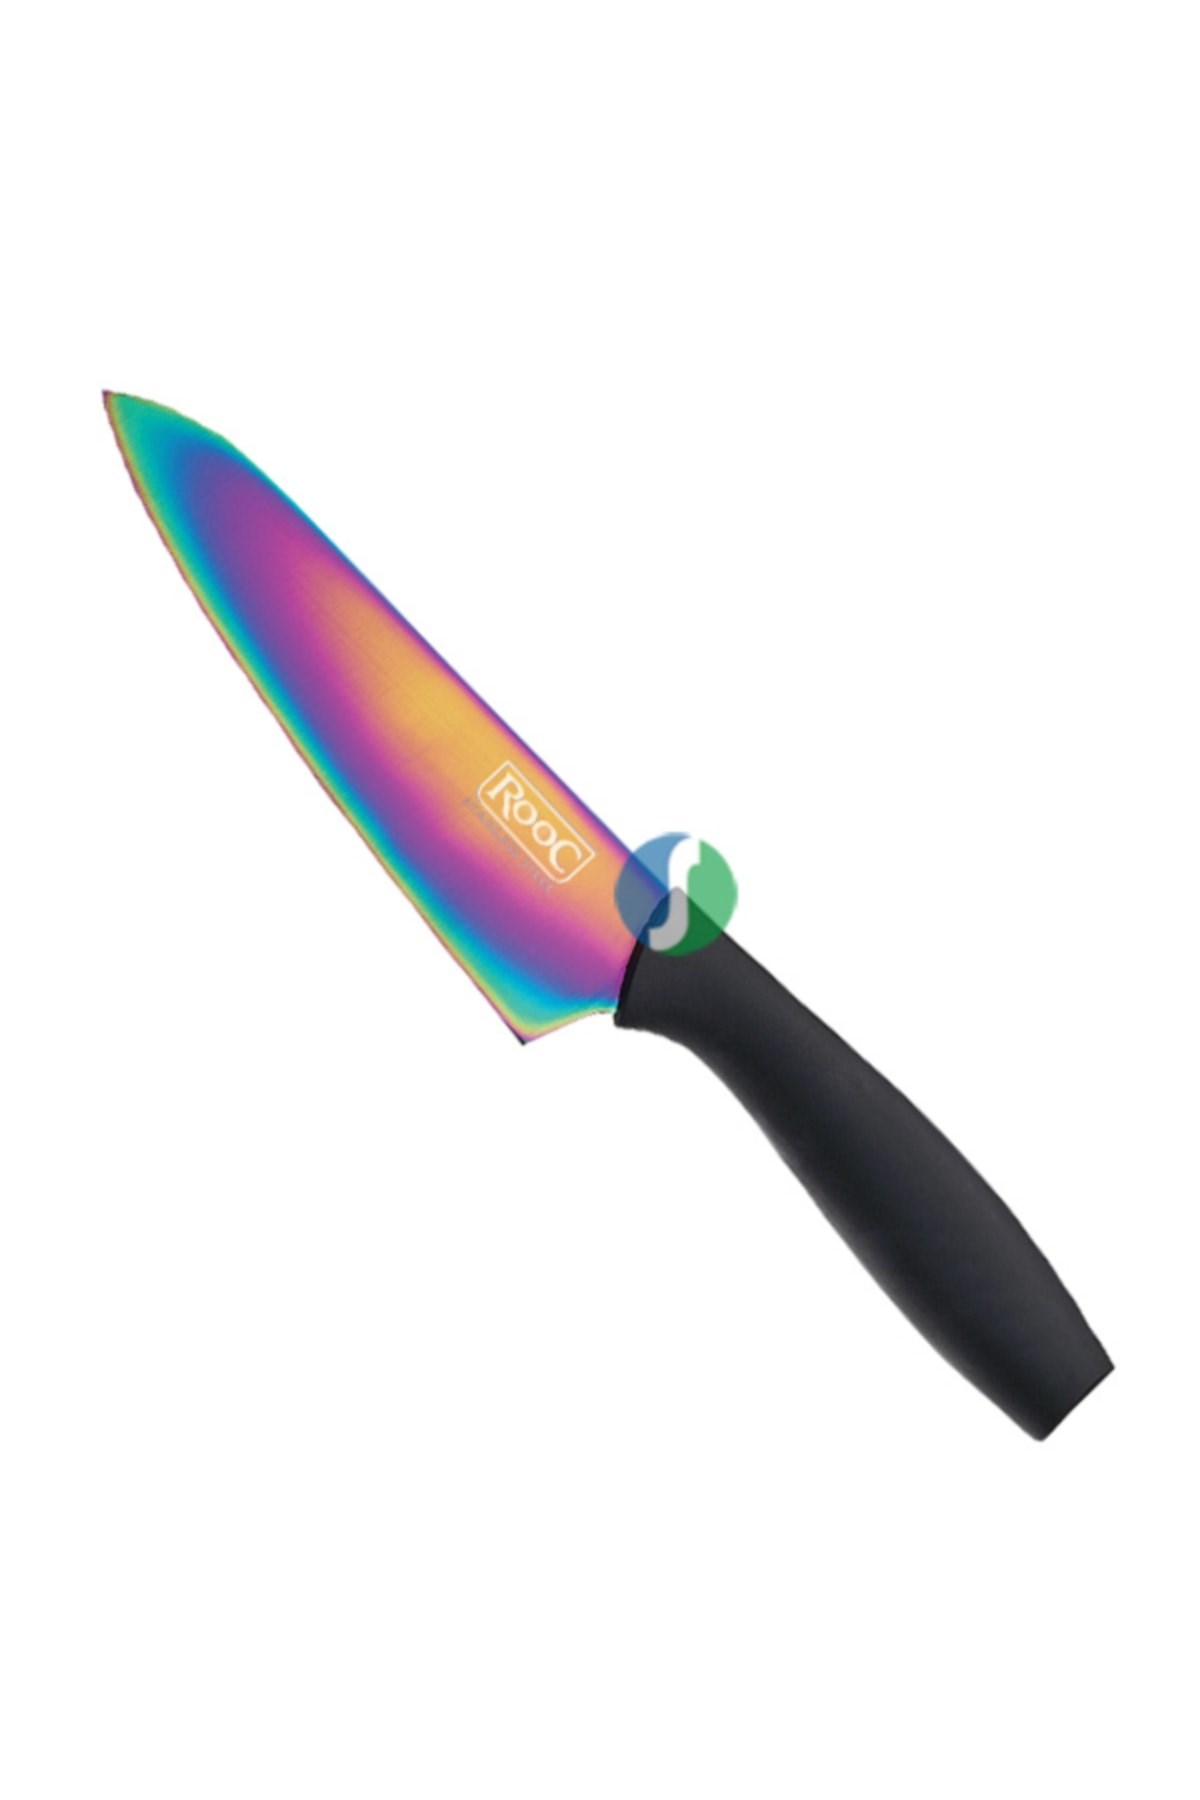 Rooc St03 6 Titanium Chef Knife Şef Bıçak